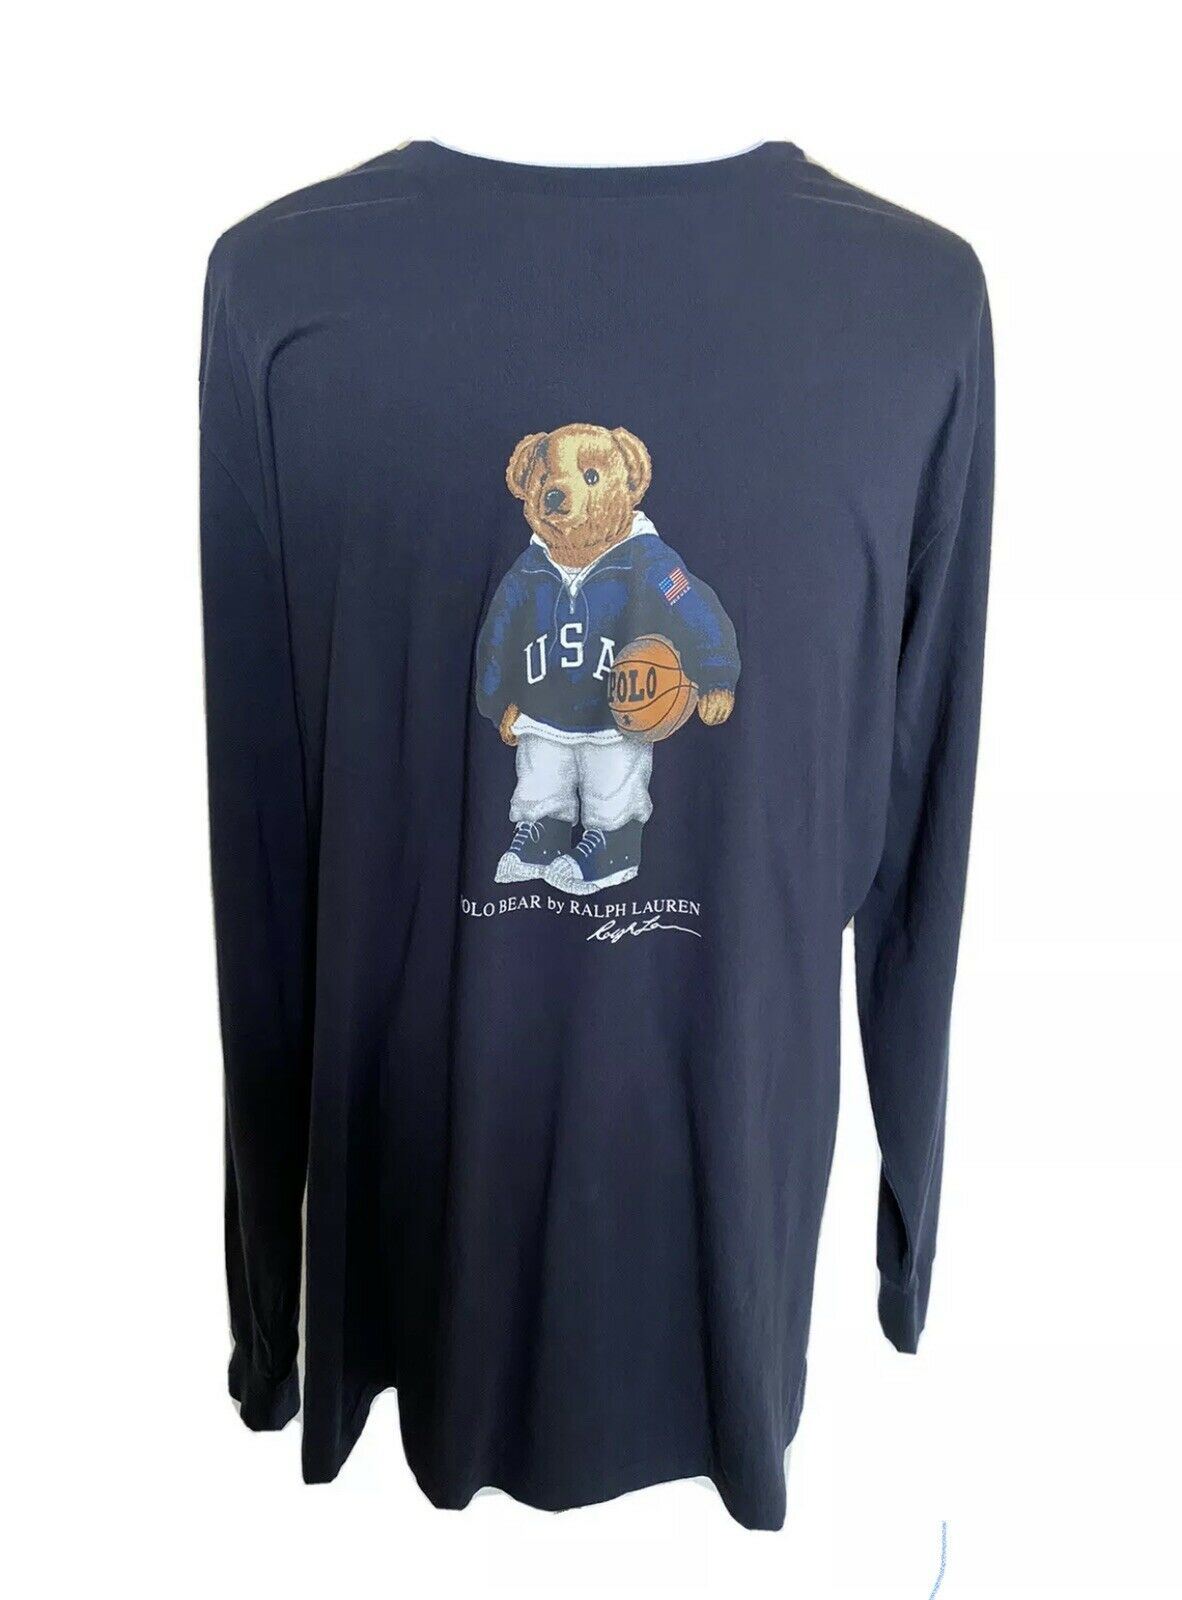 Neu mit Etikett: Polo Ralph Lauren Herren-Langarmshirt mit Basketball-Bär, Blau, 3XBTG 